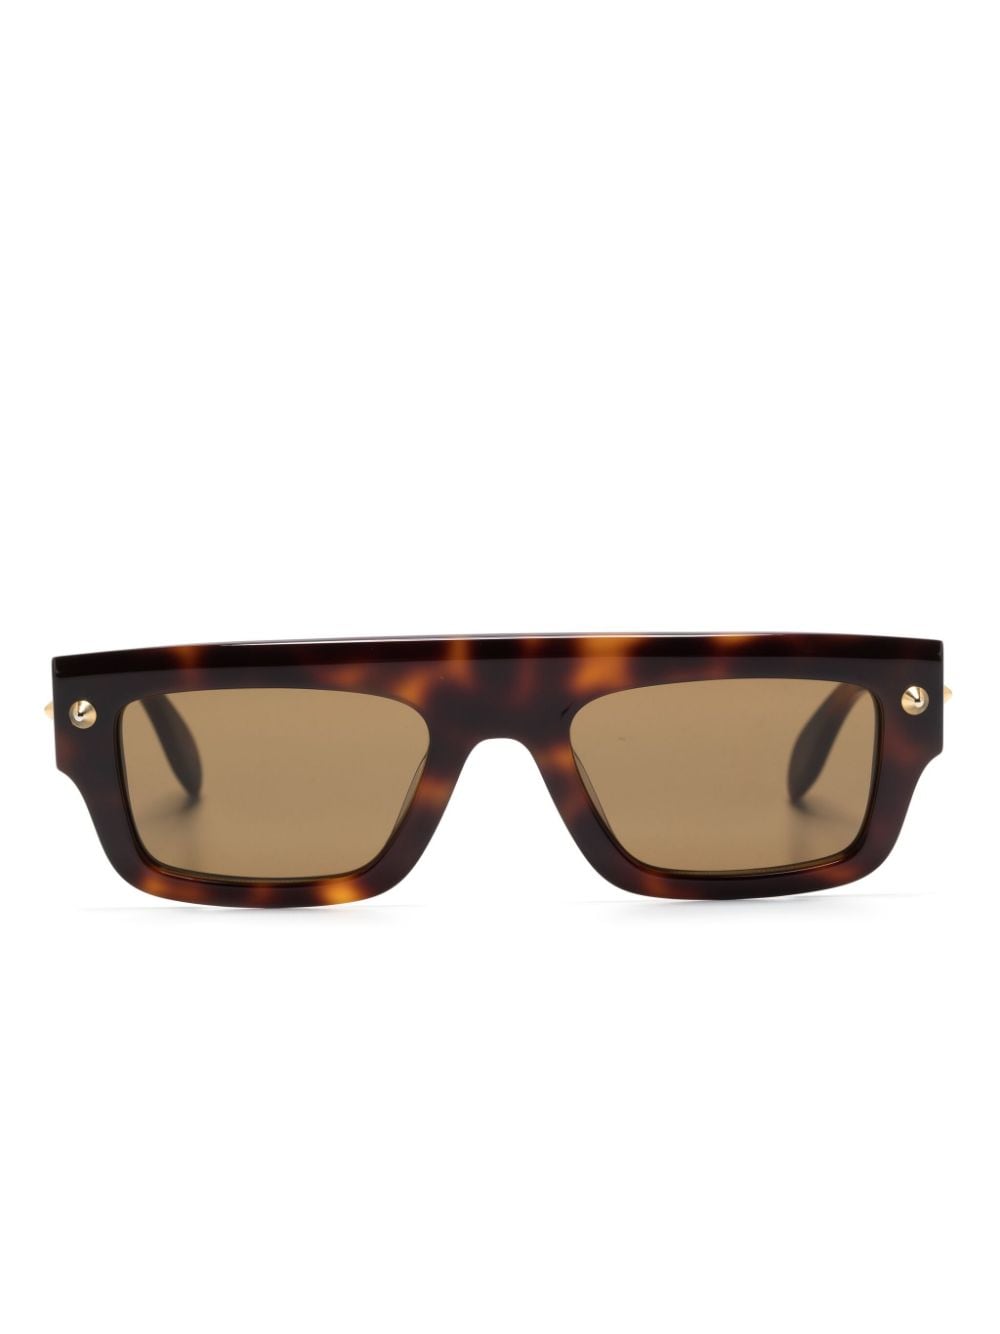 Alexander McQueen Eyewear Sonnenbrille mit spitzen Nieten - Braun von Alexander McQueen Eyewear